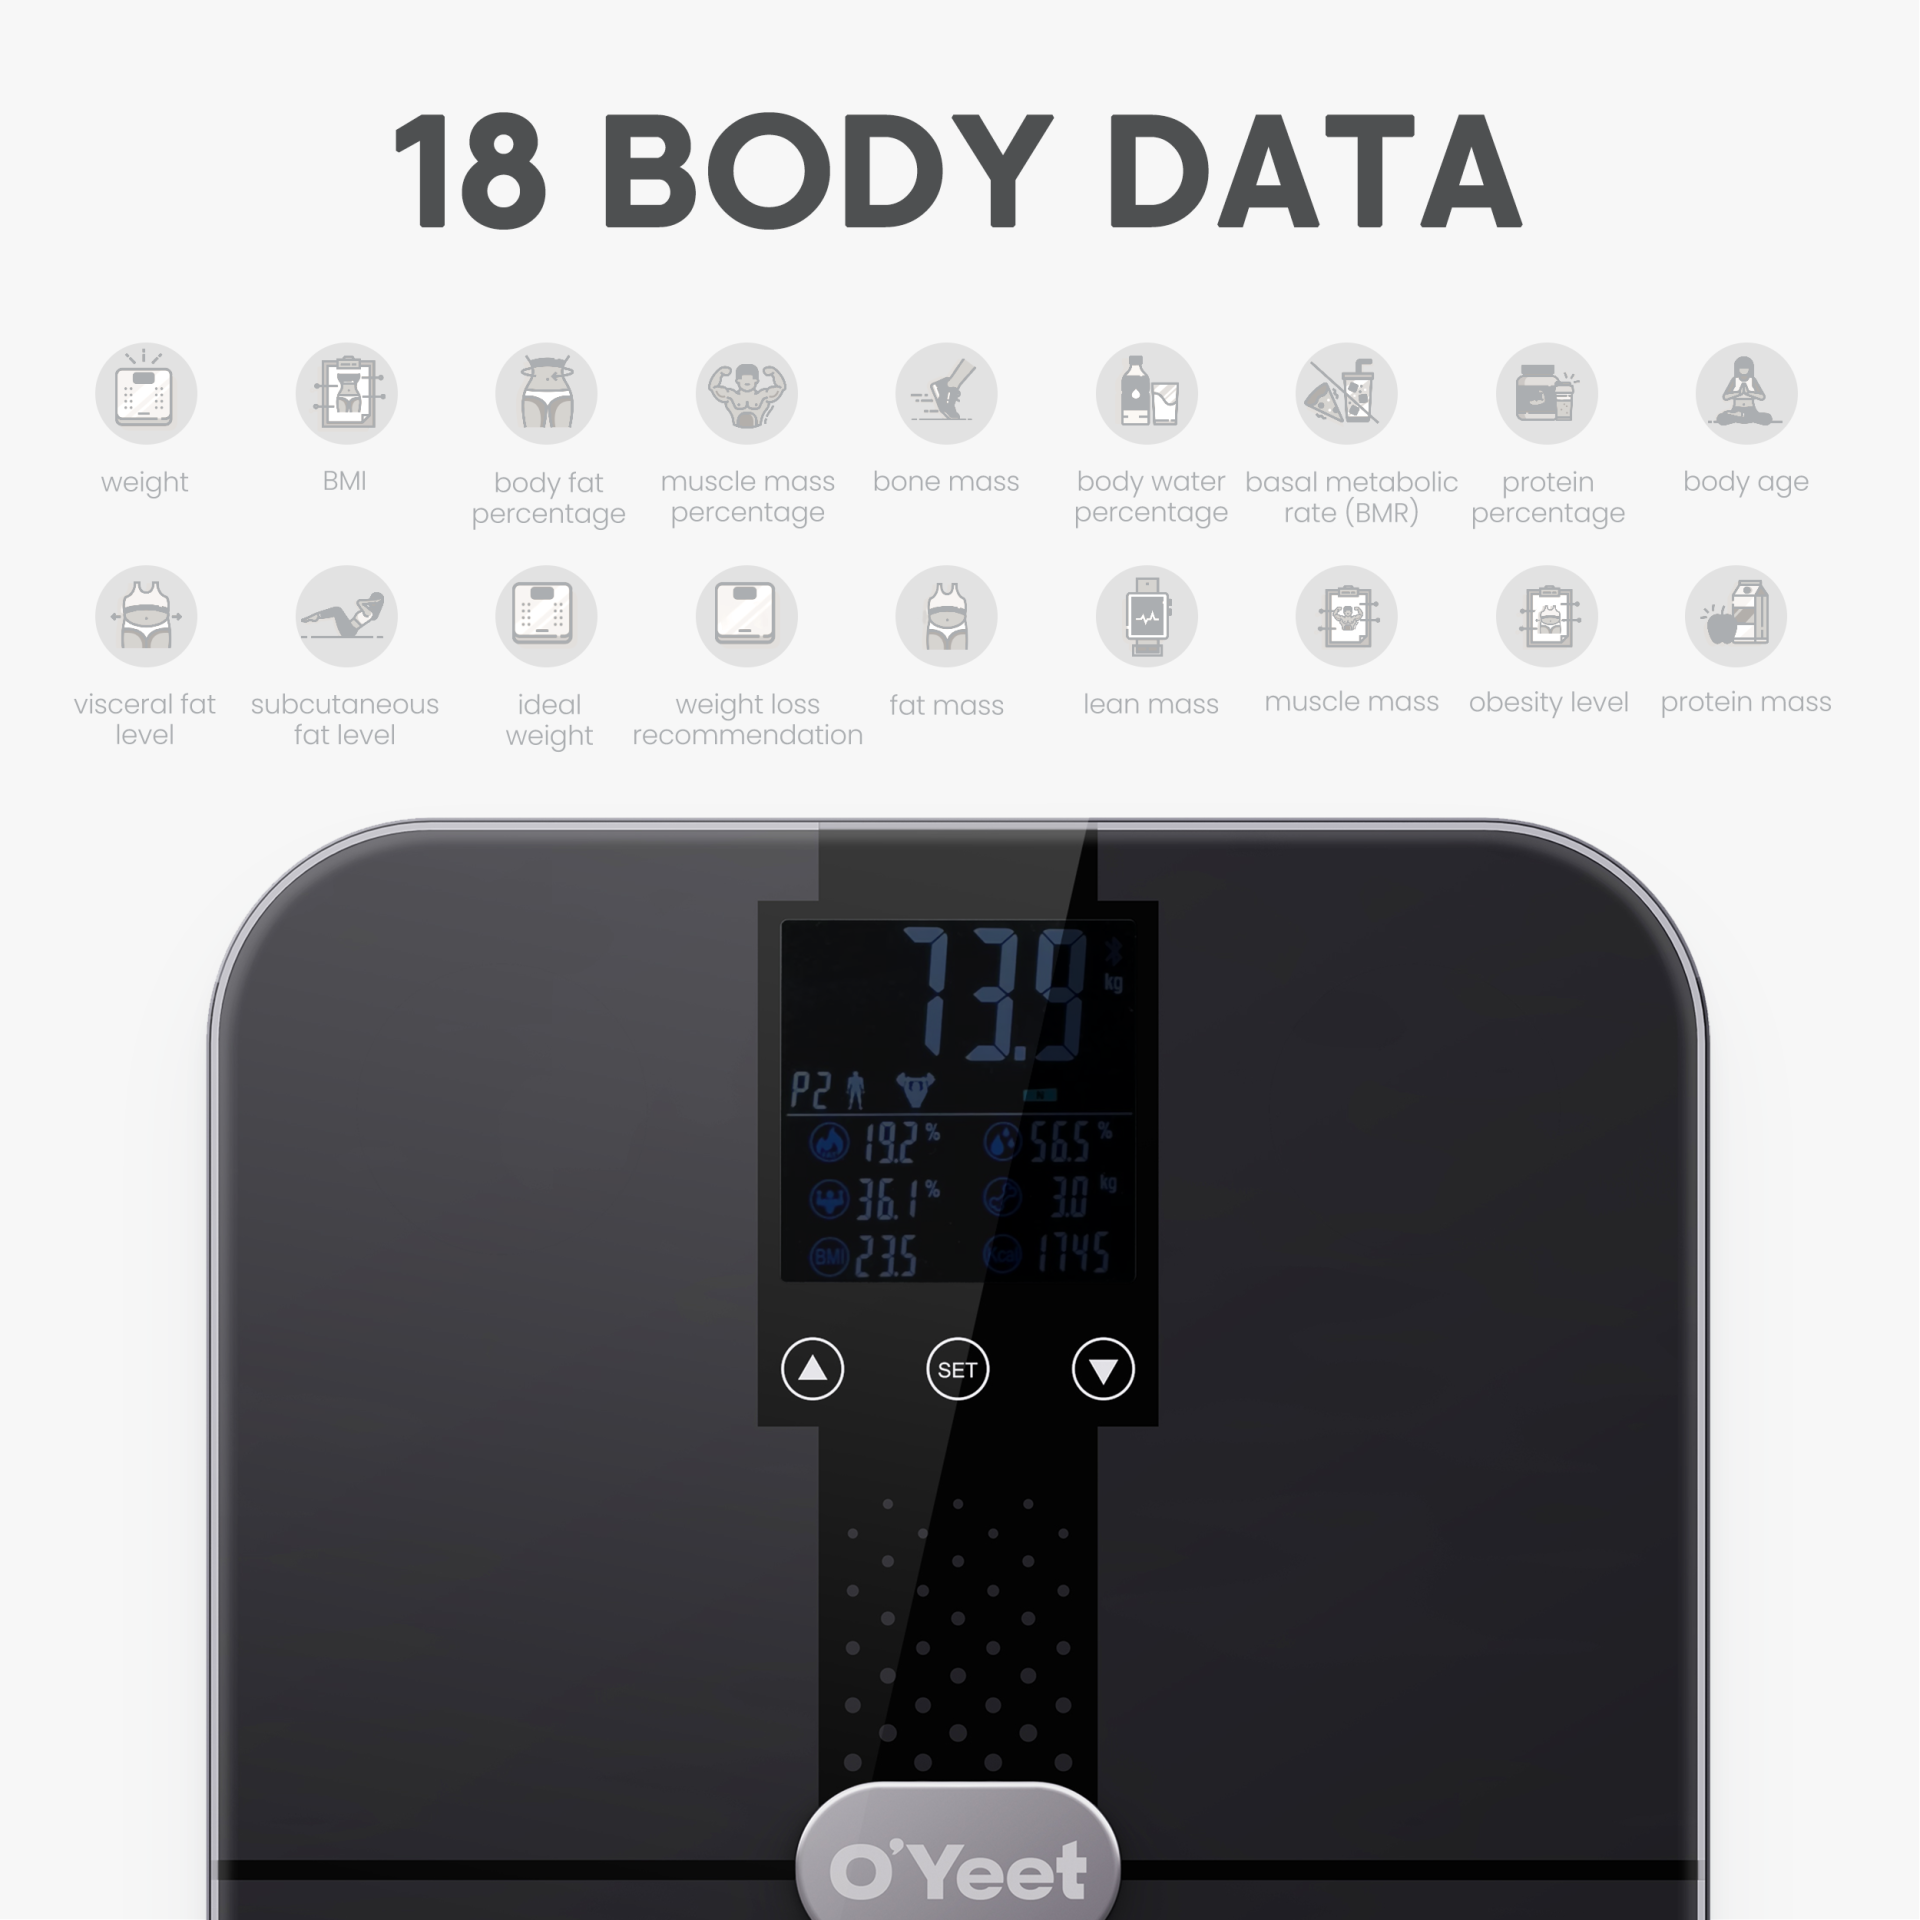 O’Yeet Körperanalysewaage BS-OY02 zeigt Gewicht, Körperfett, Wasser- und Muskelanteil auf der LED-Anzeige